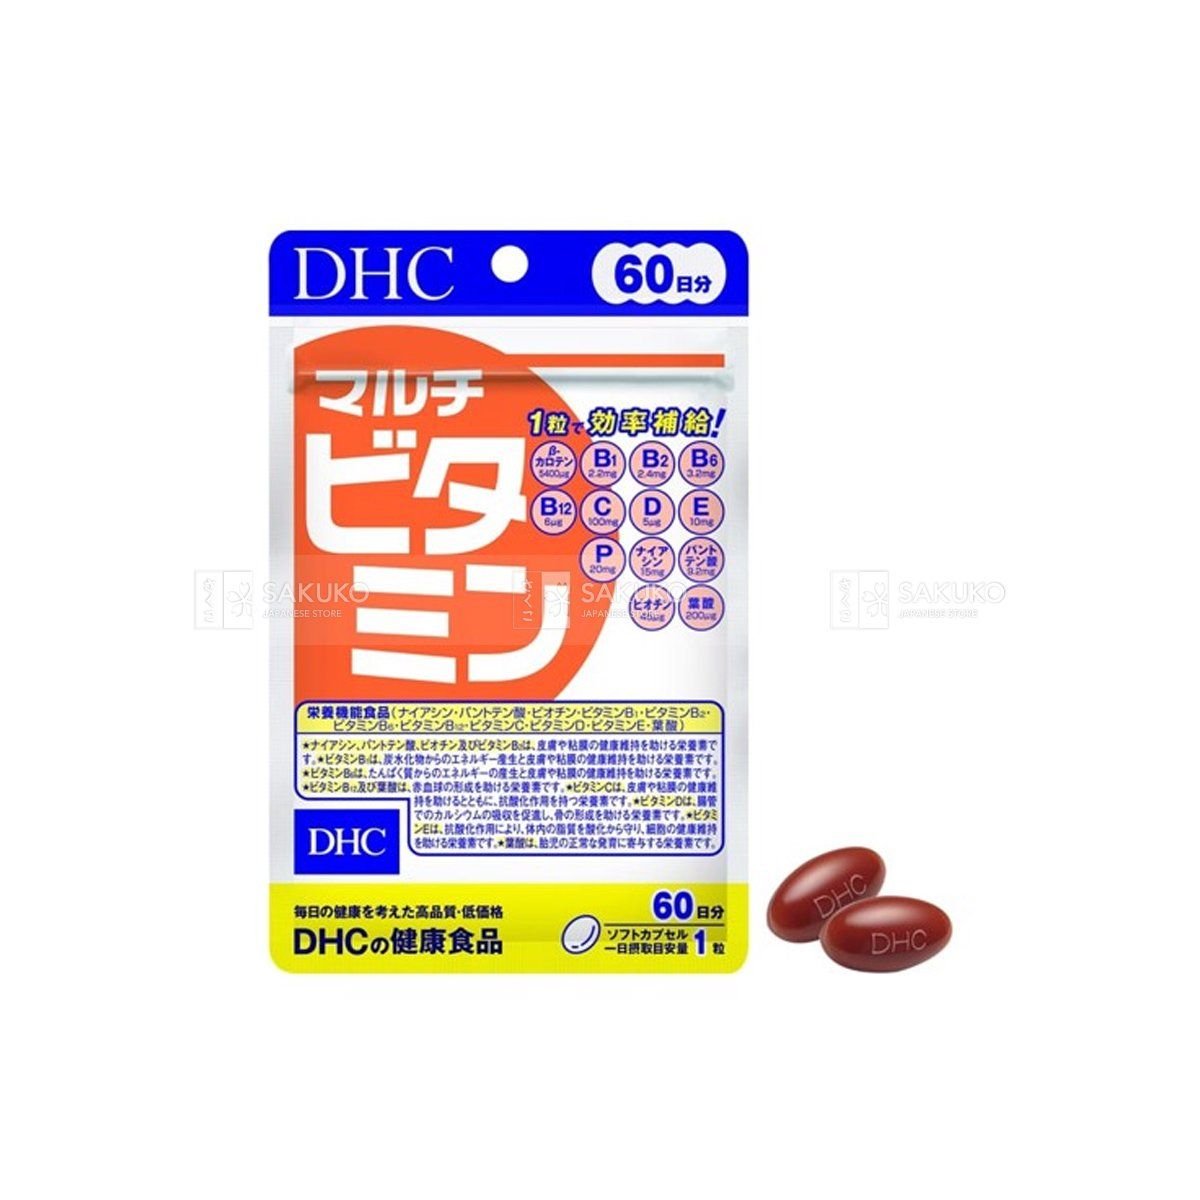  DHC- Viên uống Vitamin tông hợp 60v 